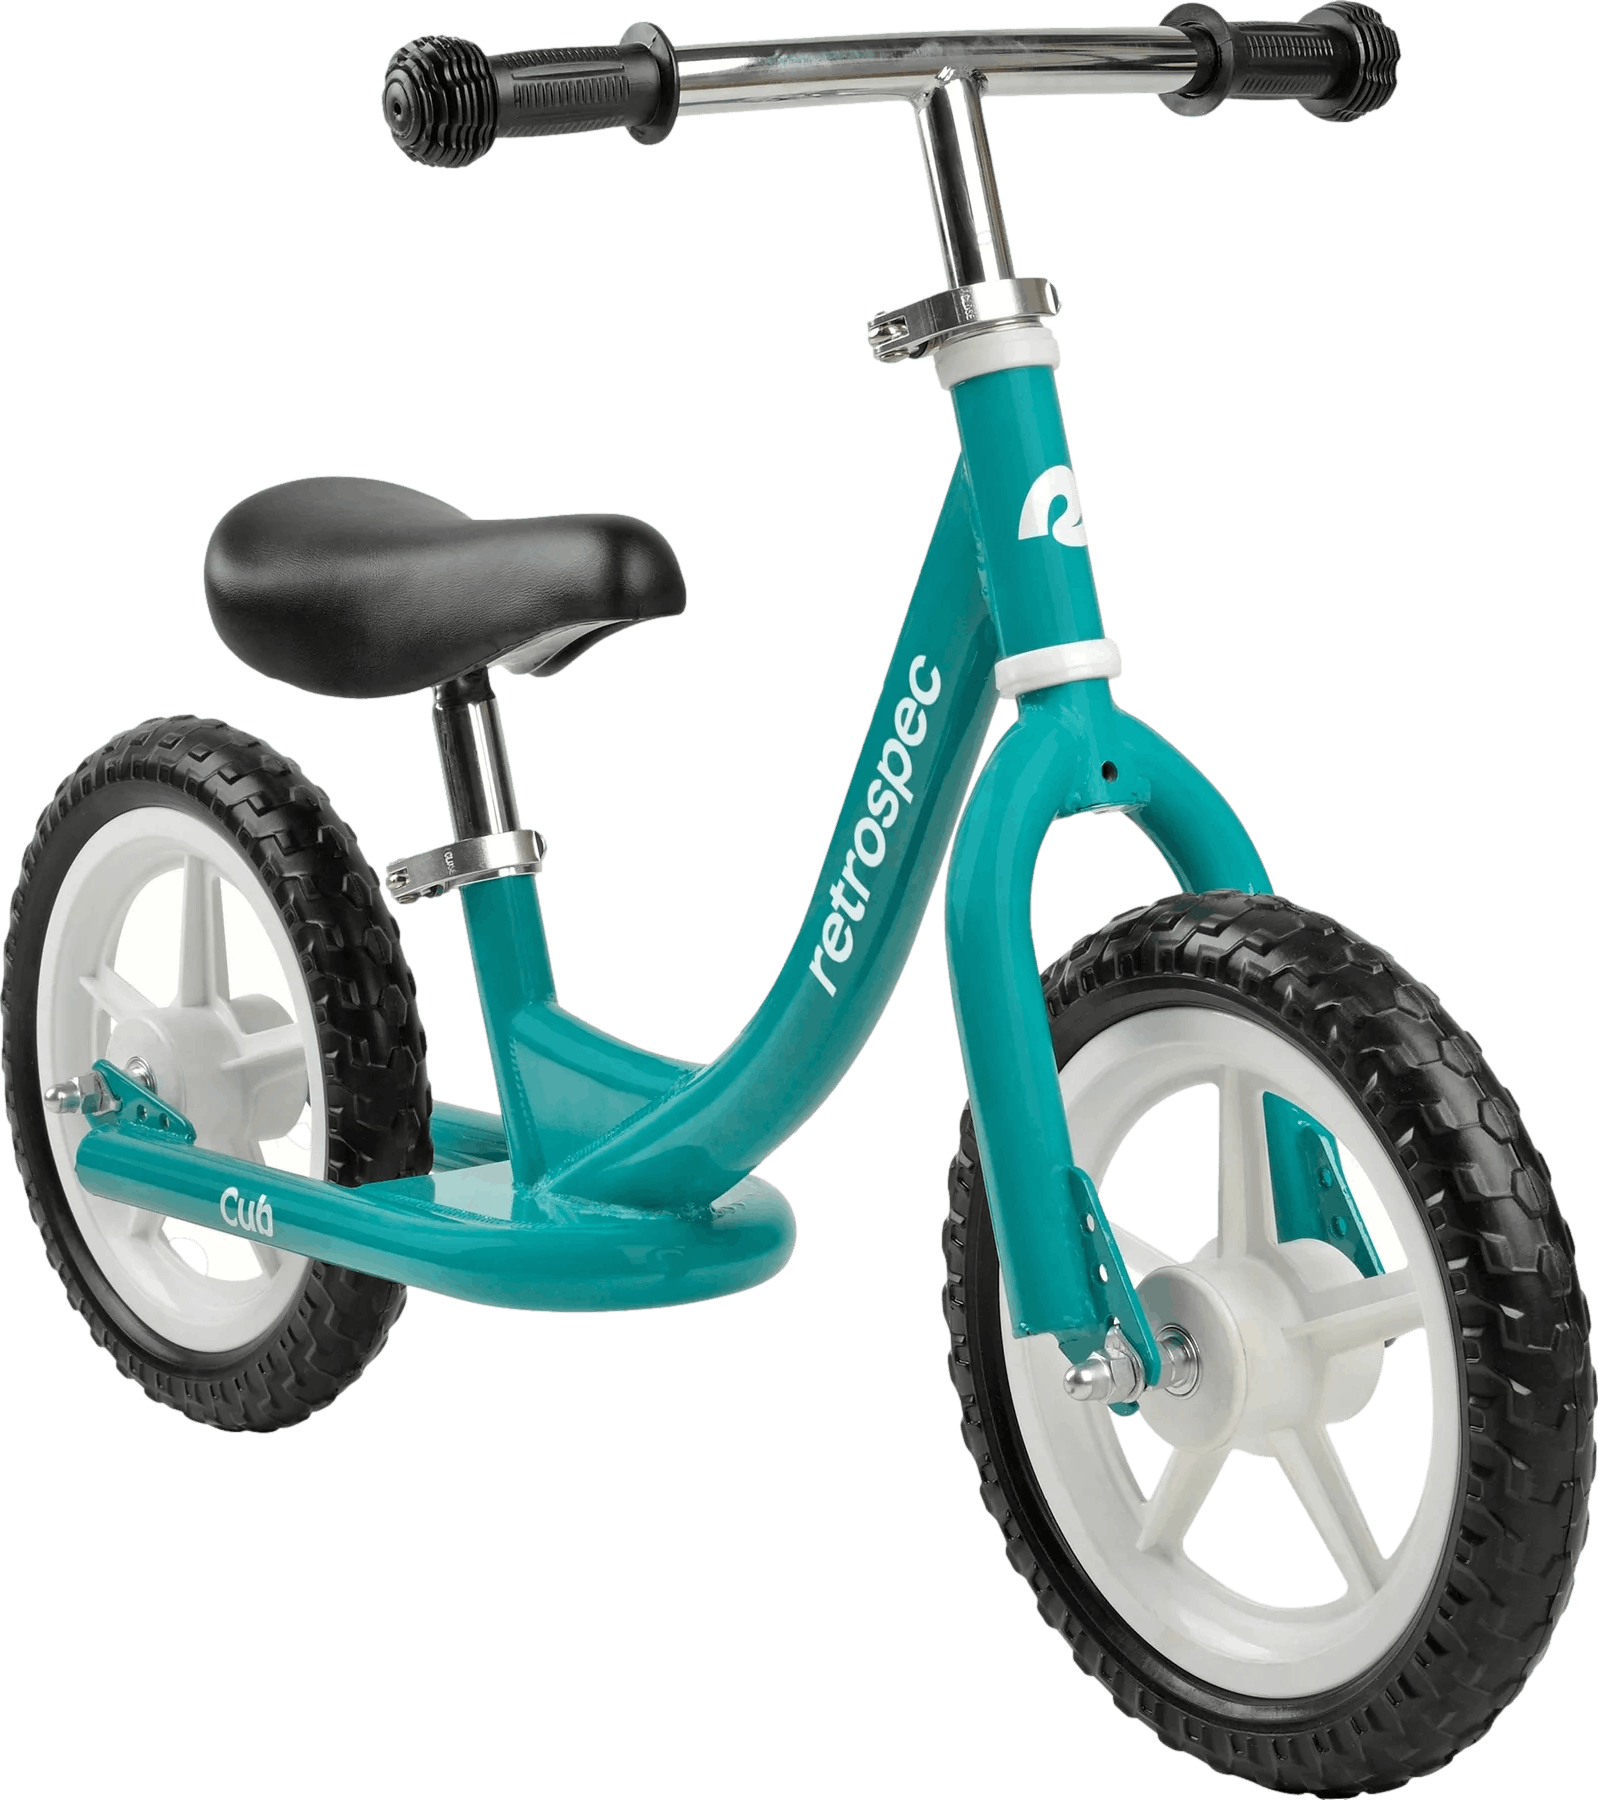 Retrospec Cub Kids Bike · Dragonfly · One size